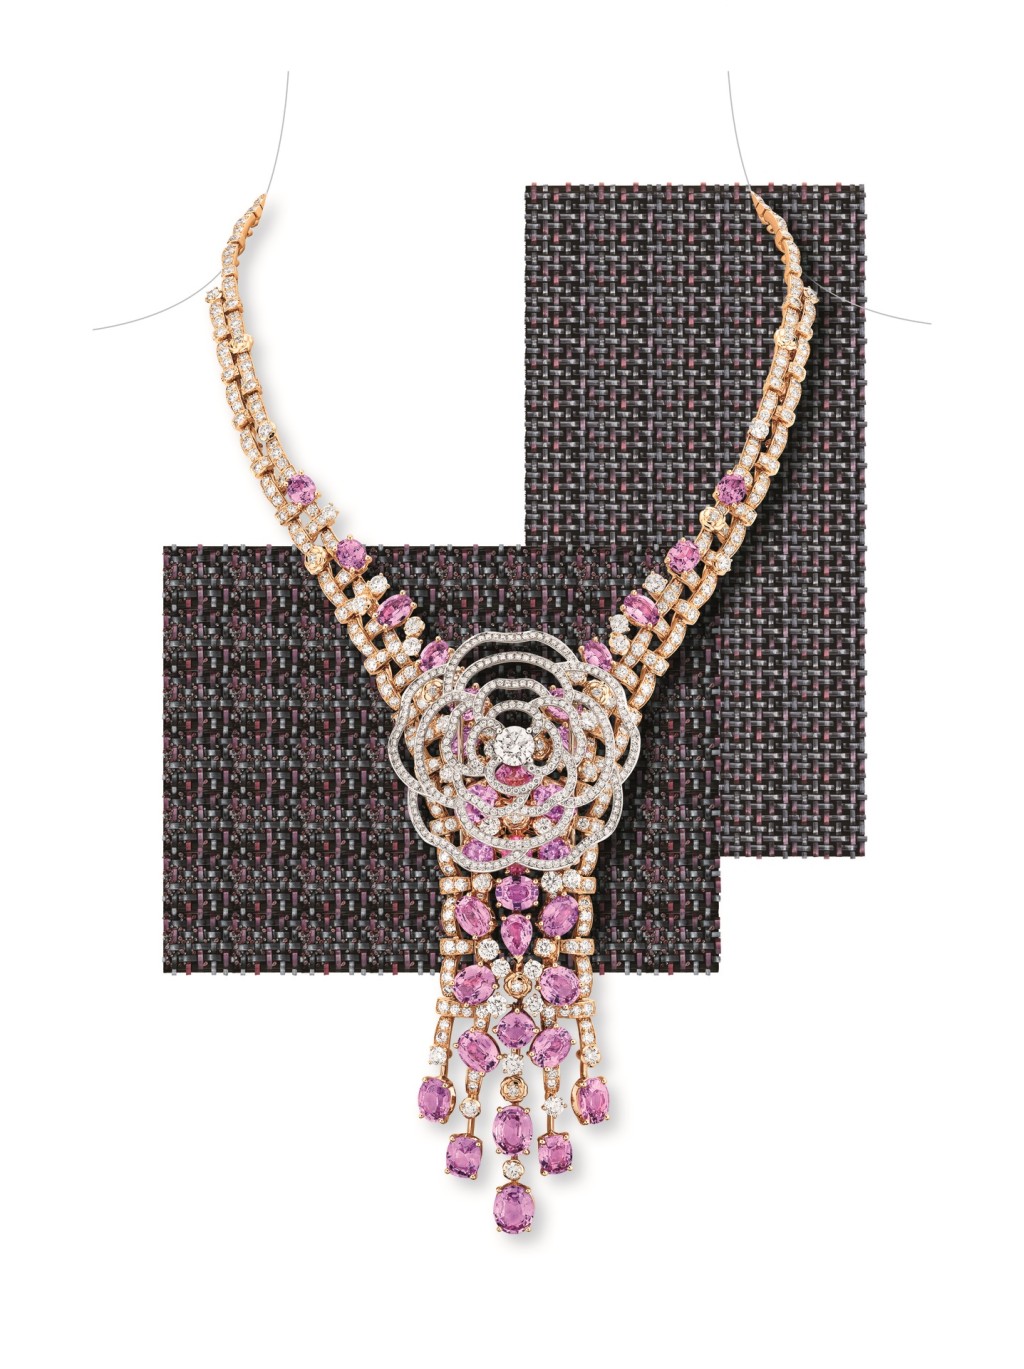 Tweed Camélia粉红金及白金项链镶嵌钻石及粉红蓝宝石，中央的山茶花图腾可单独作胸针佩戴。